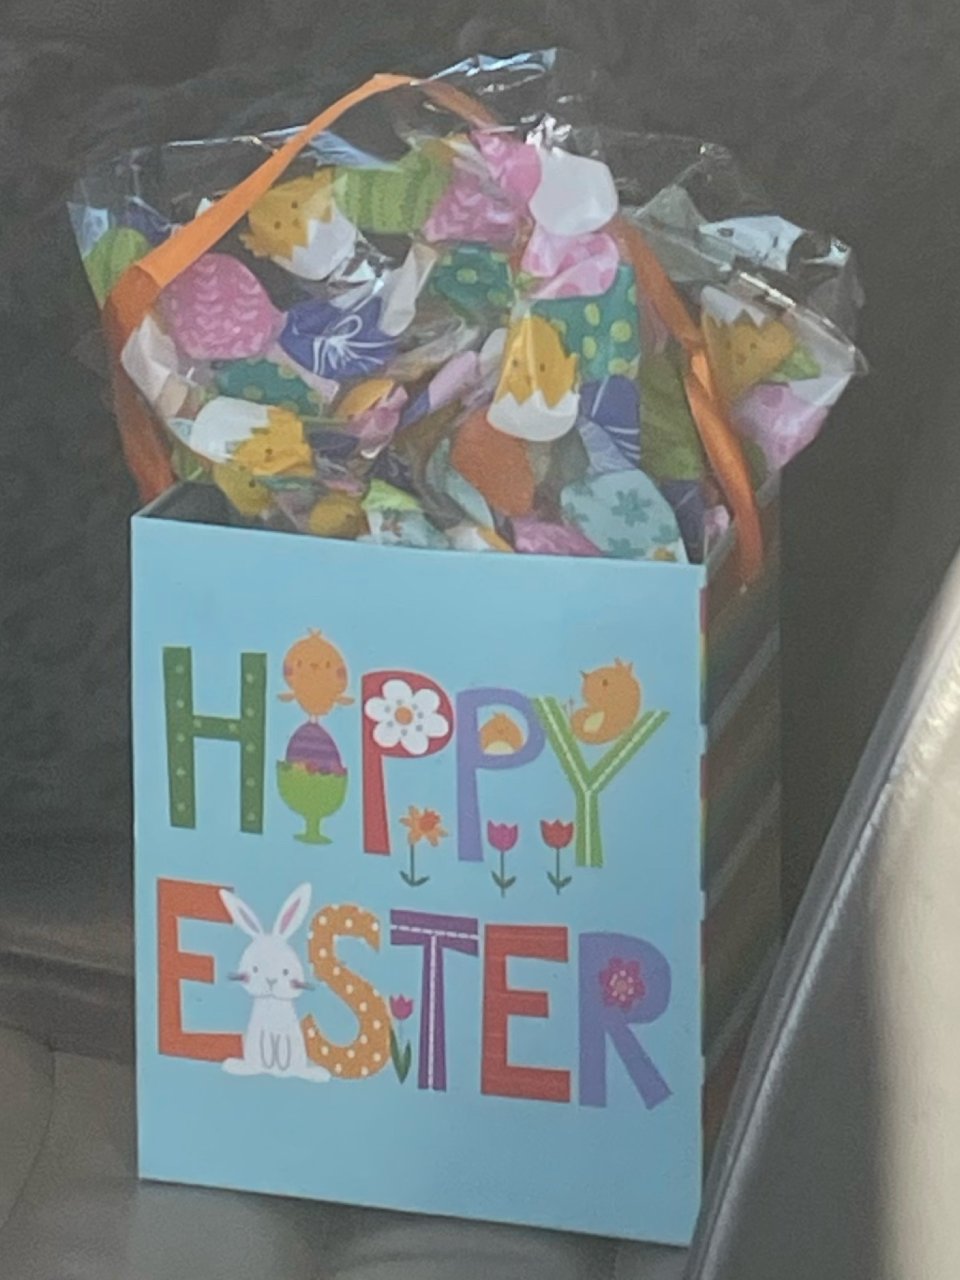 人间四月天｜Happy Easter 🐣...